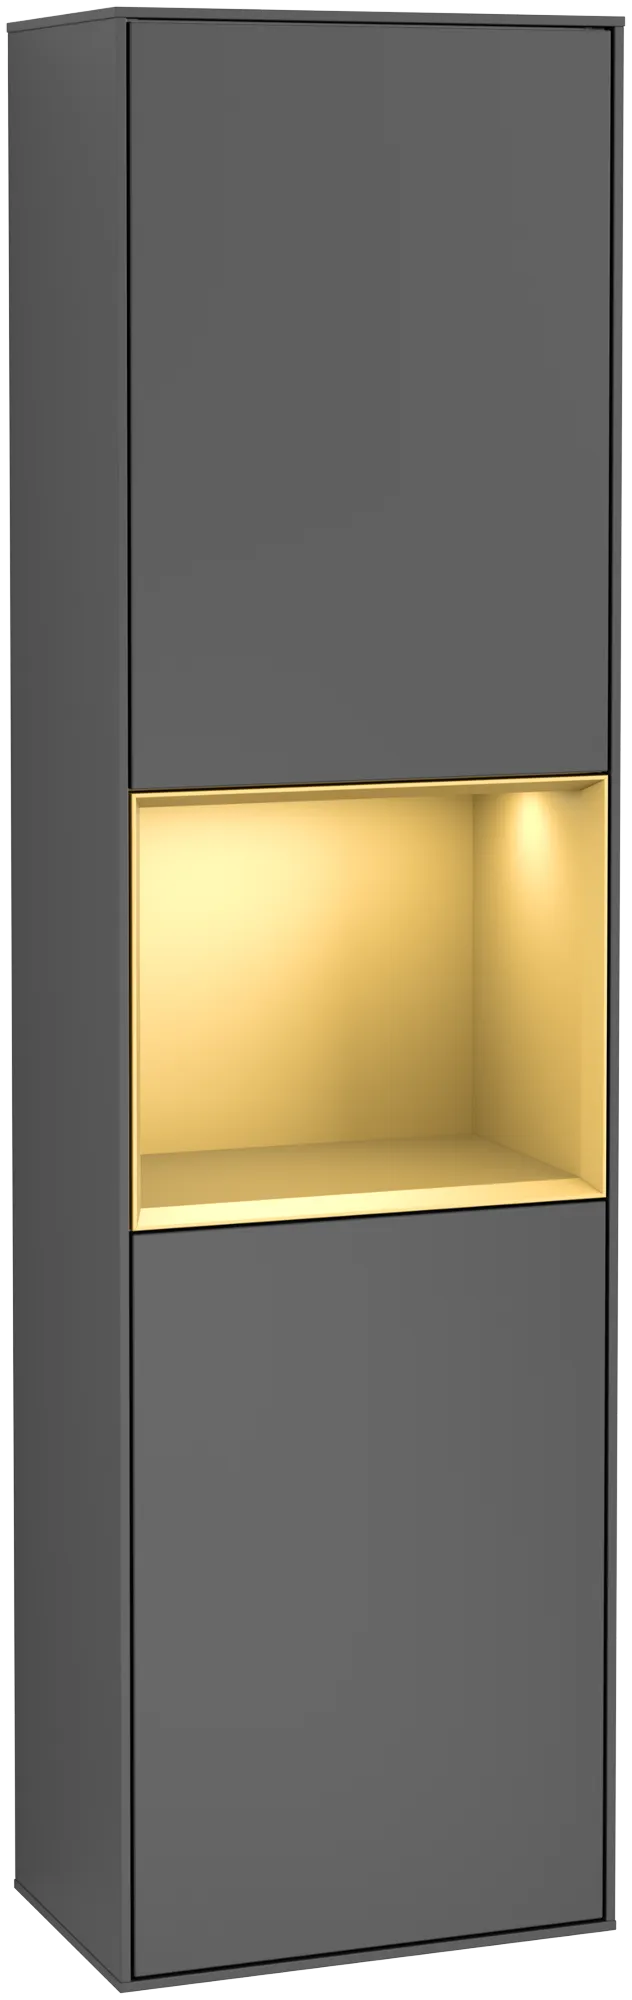 Bild von VILLEROY BOCH Finion Hochschrank, mit Beleuchtung, 2 Türen, 418 x 1516 x 270 mm, Anthracite Matt Lacquer / Gold Matt Lacquer #G470HFGK